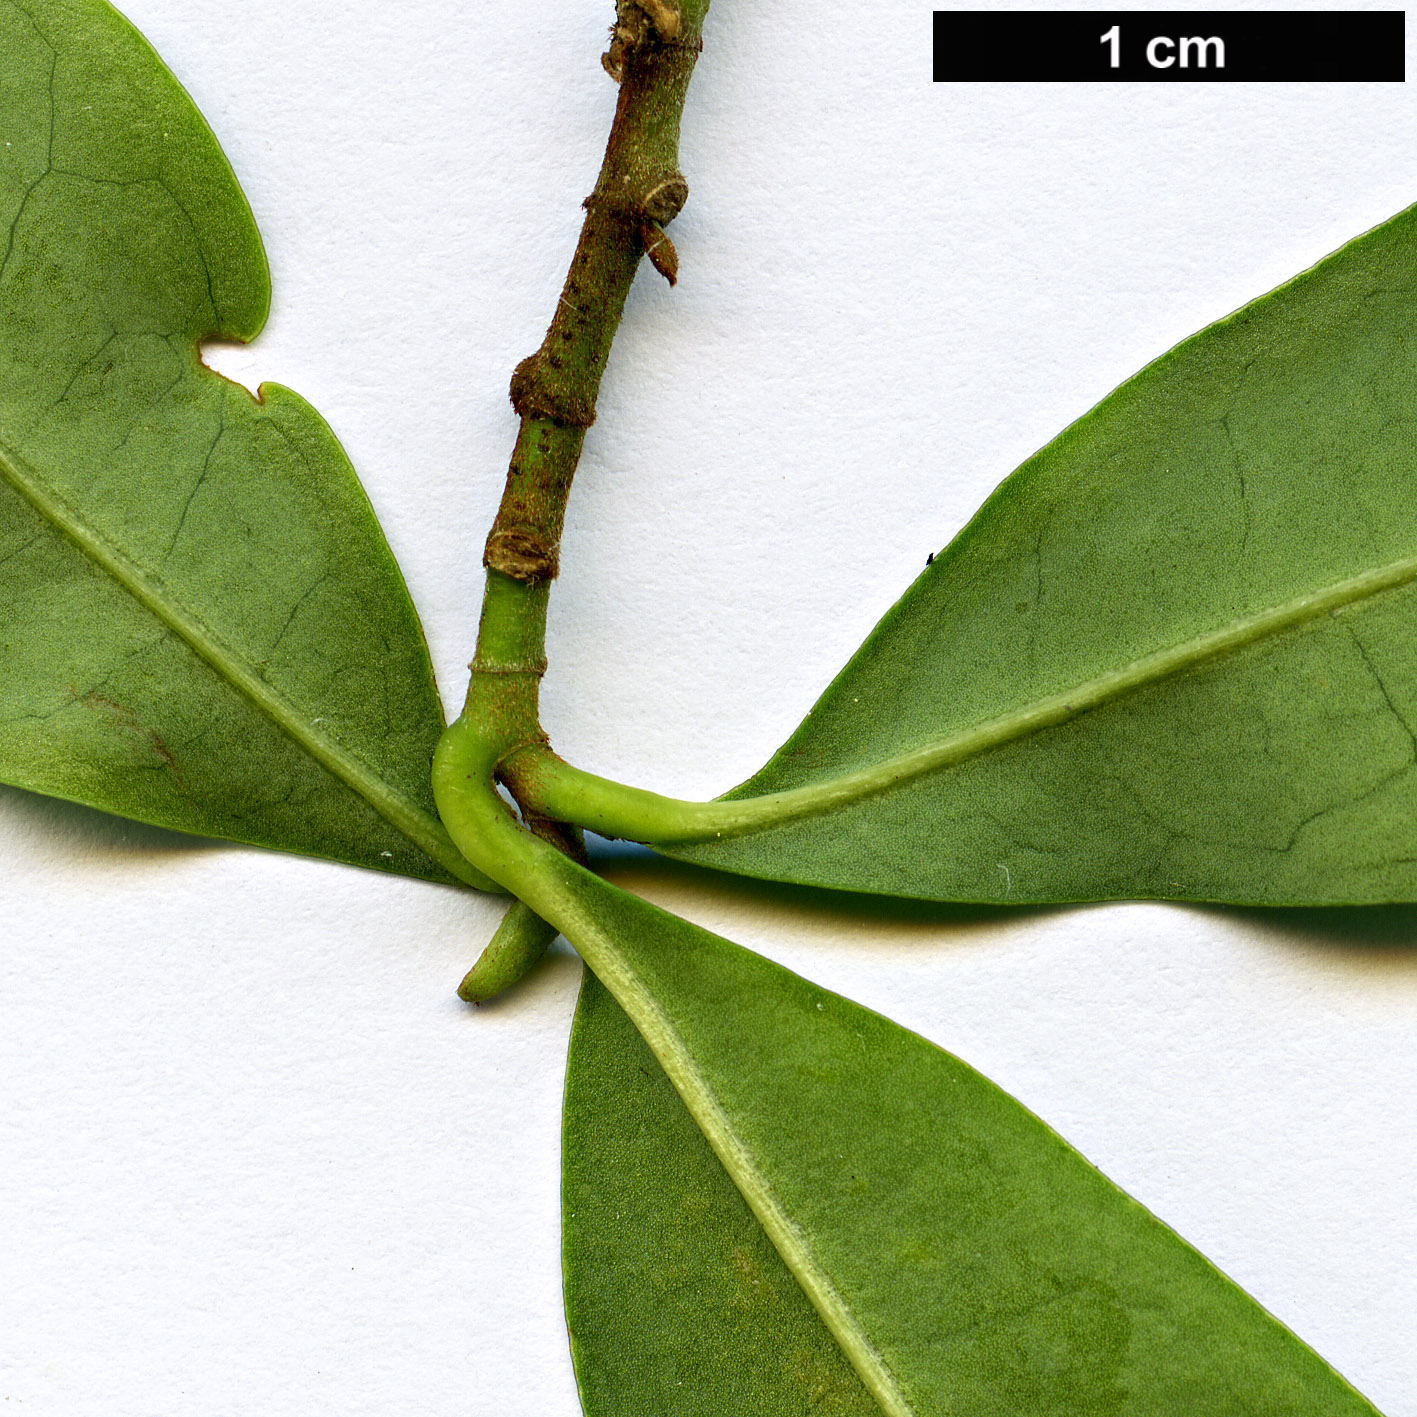 High resolution image: Family: Magnoliaceae - Genus: Magnolia - Taxon: amabilis